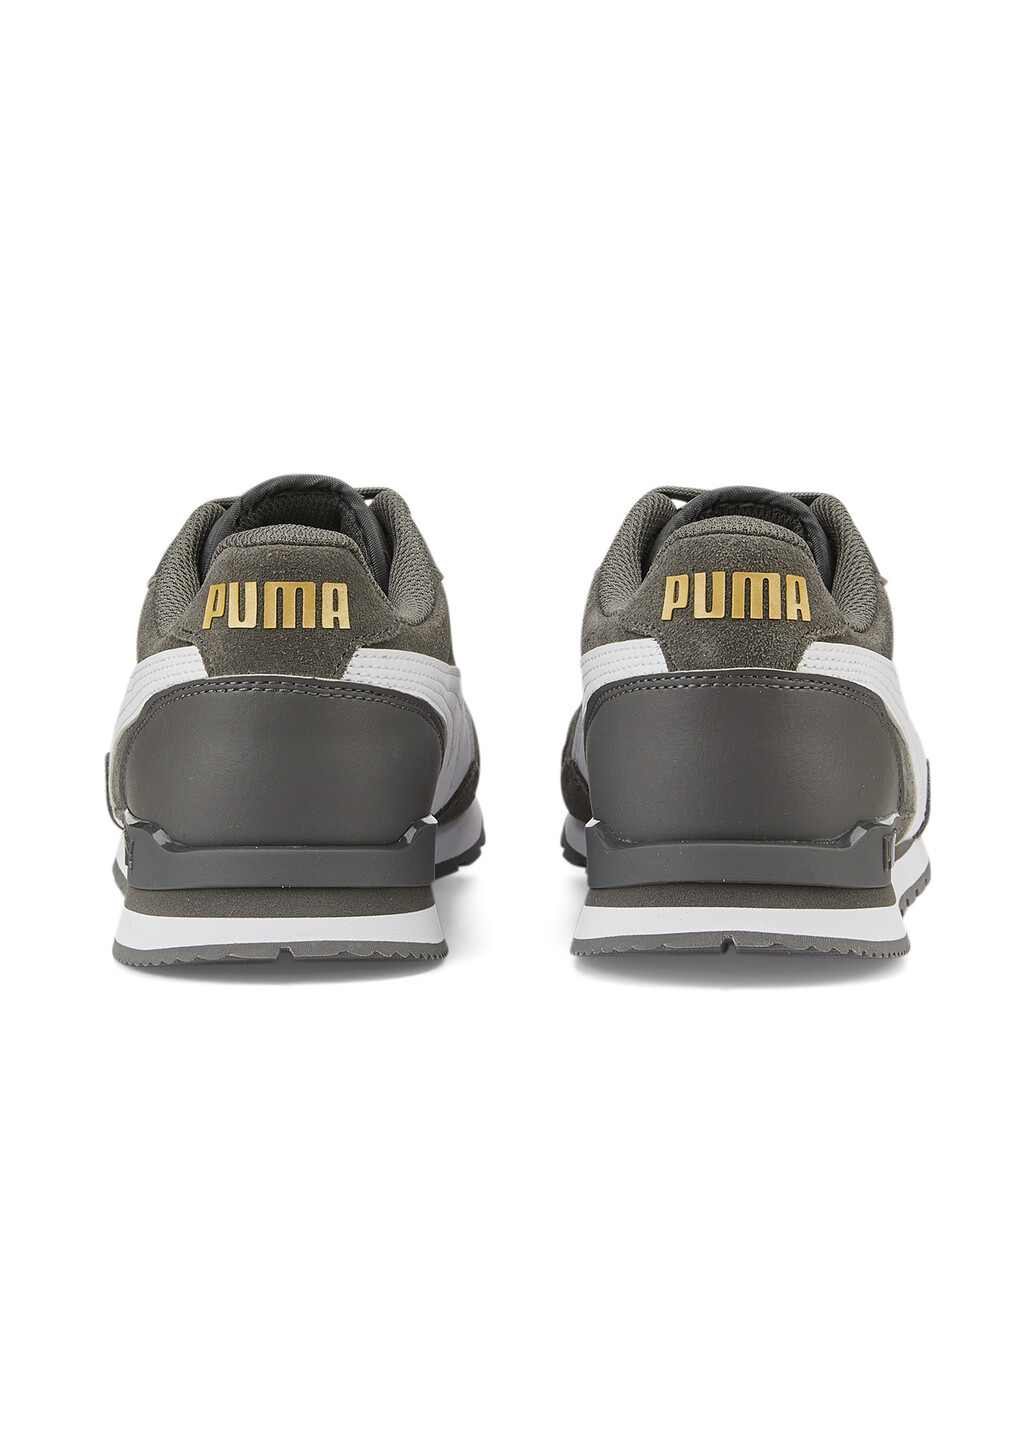 Кроссовки ST Runner v3 SD Sneakers Puma однотонные серые спортивные